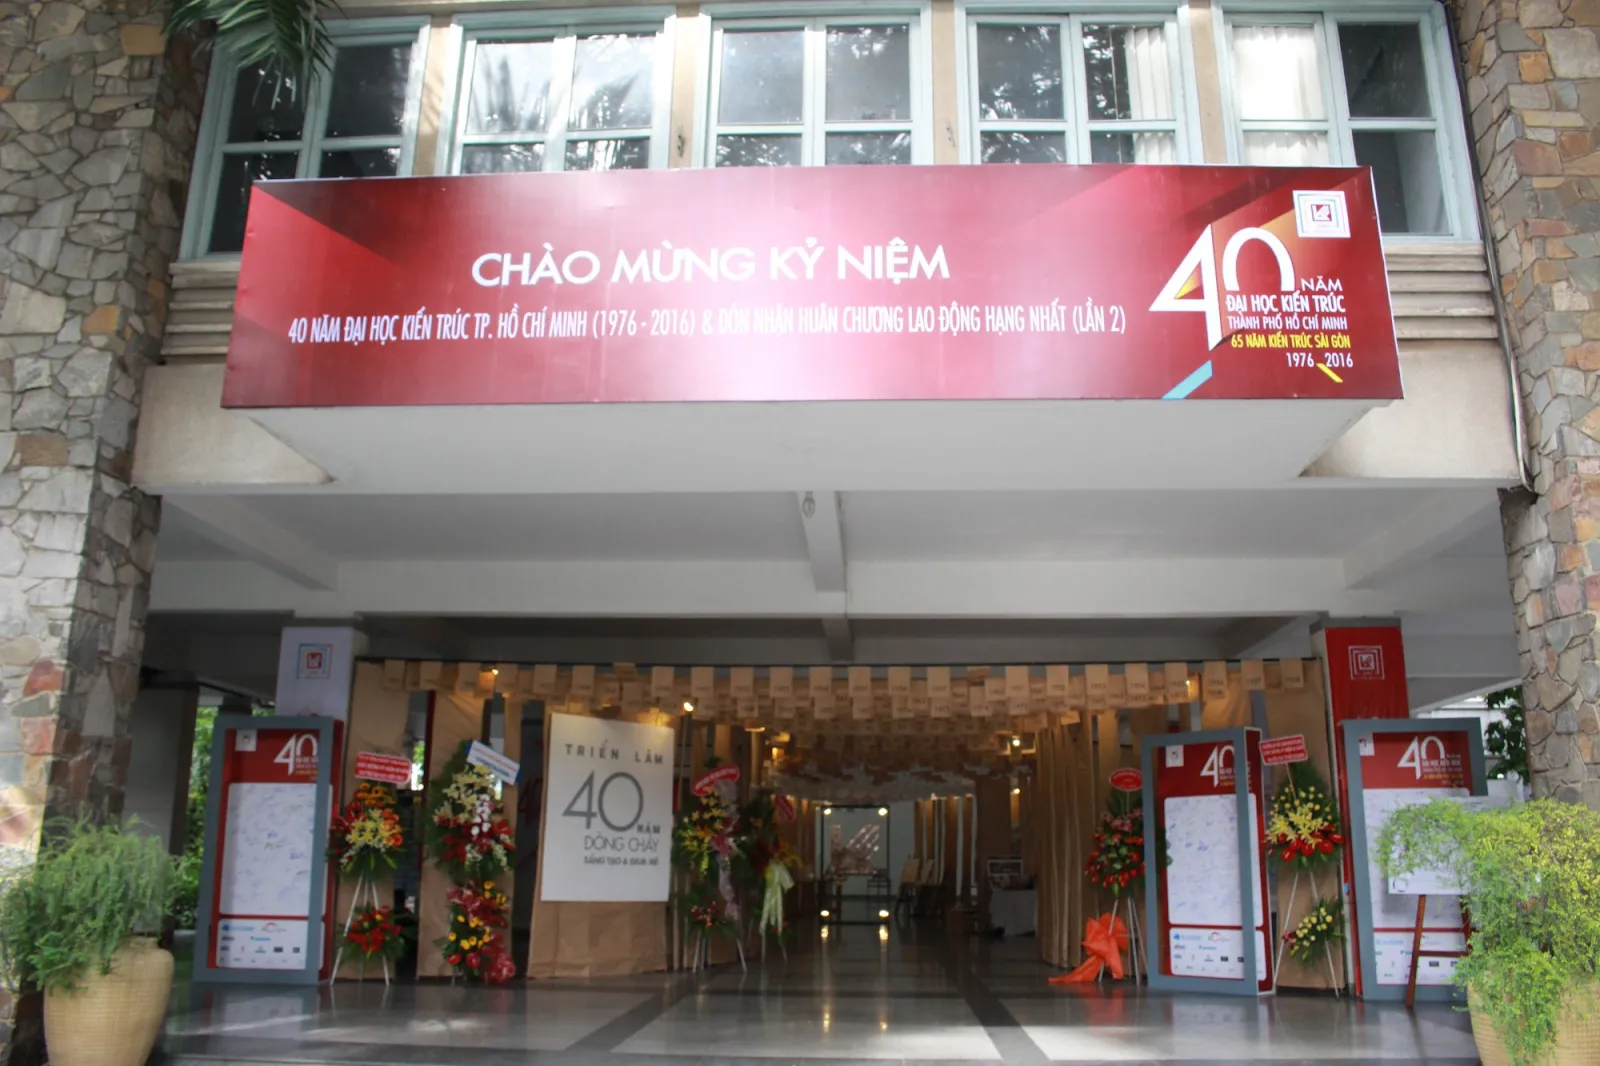 Đại học Kiến trúc Thành phố Hồ Chí Minh dịp kỷ niệm 40 năm thành lập (1976 -2016).